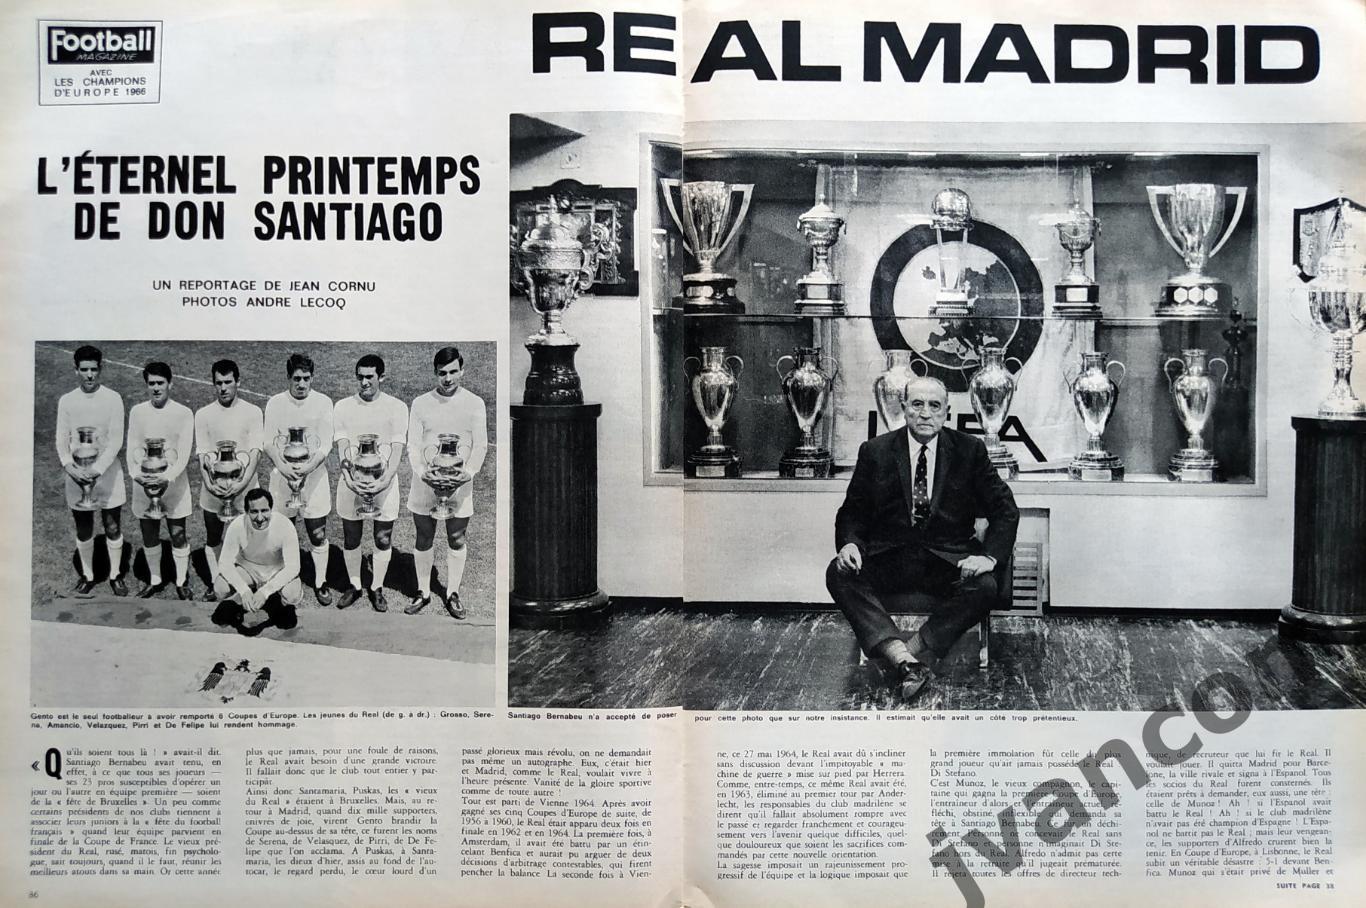 Журнал FOOTBALL MAGAZINE №77 за 1966 год. 6